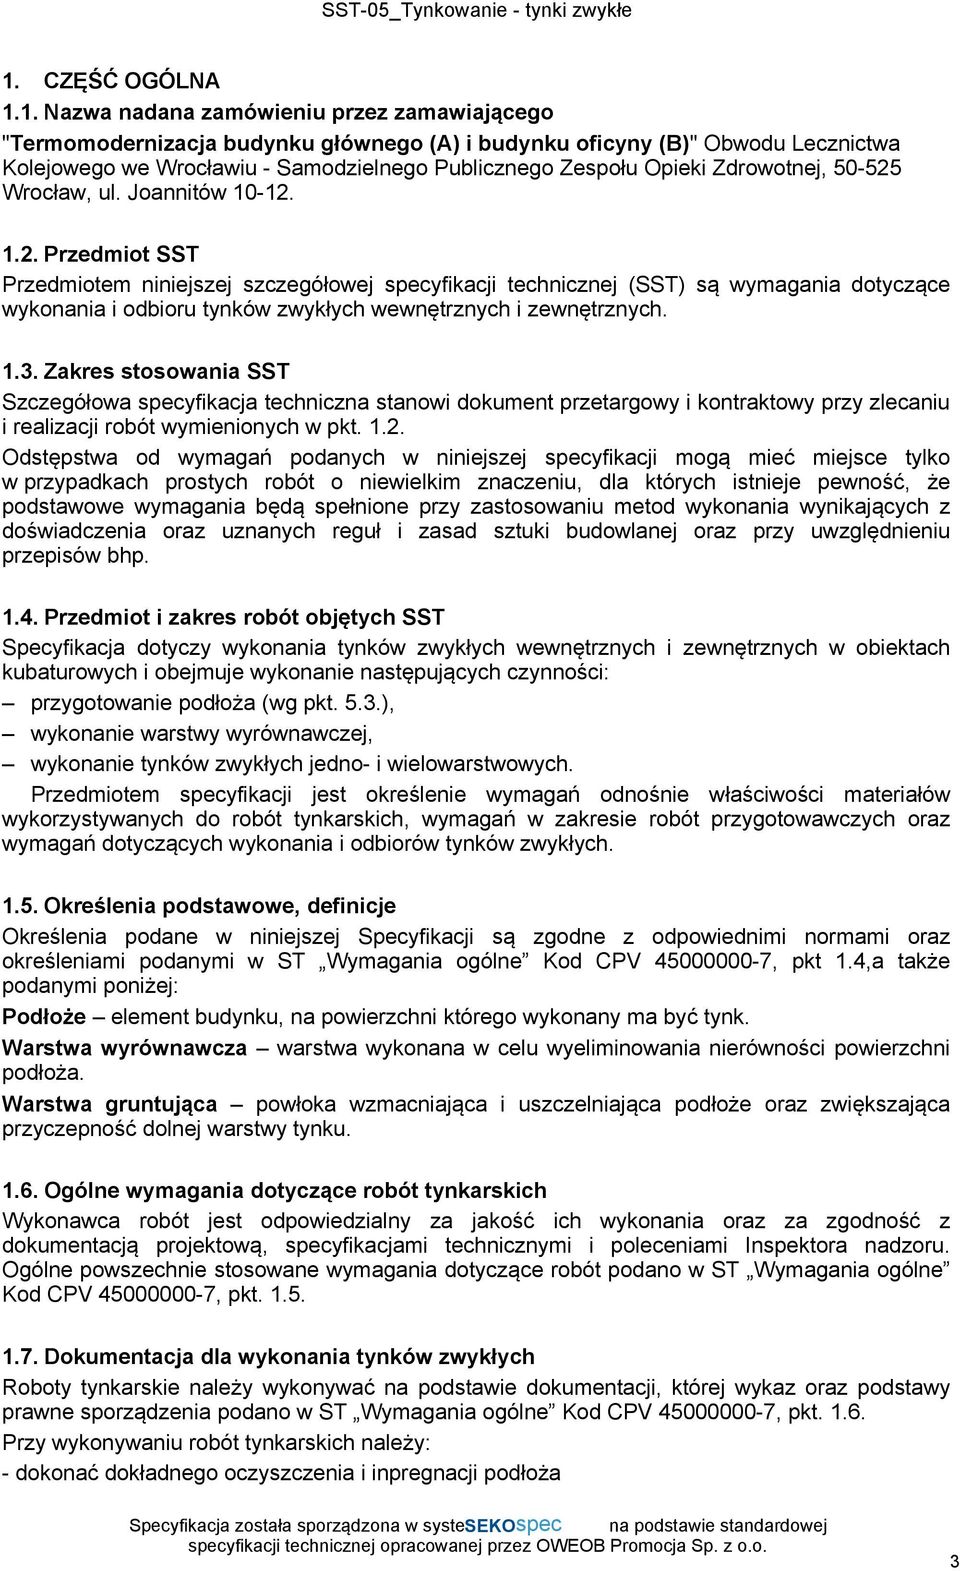 Wrocław, ul. Joannitów 10-12. 1.2. Przedmiot SST Przedmiotem niniejszej szczegółowej specyfikacji technicznej (SST) są wymagania dotyczące wykonania i odbioru tynków zwykłych wewnętrznych i zewnętrznych.